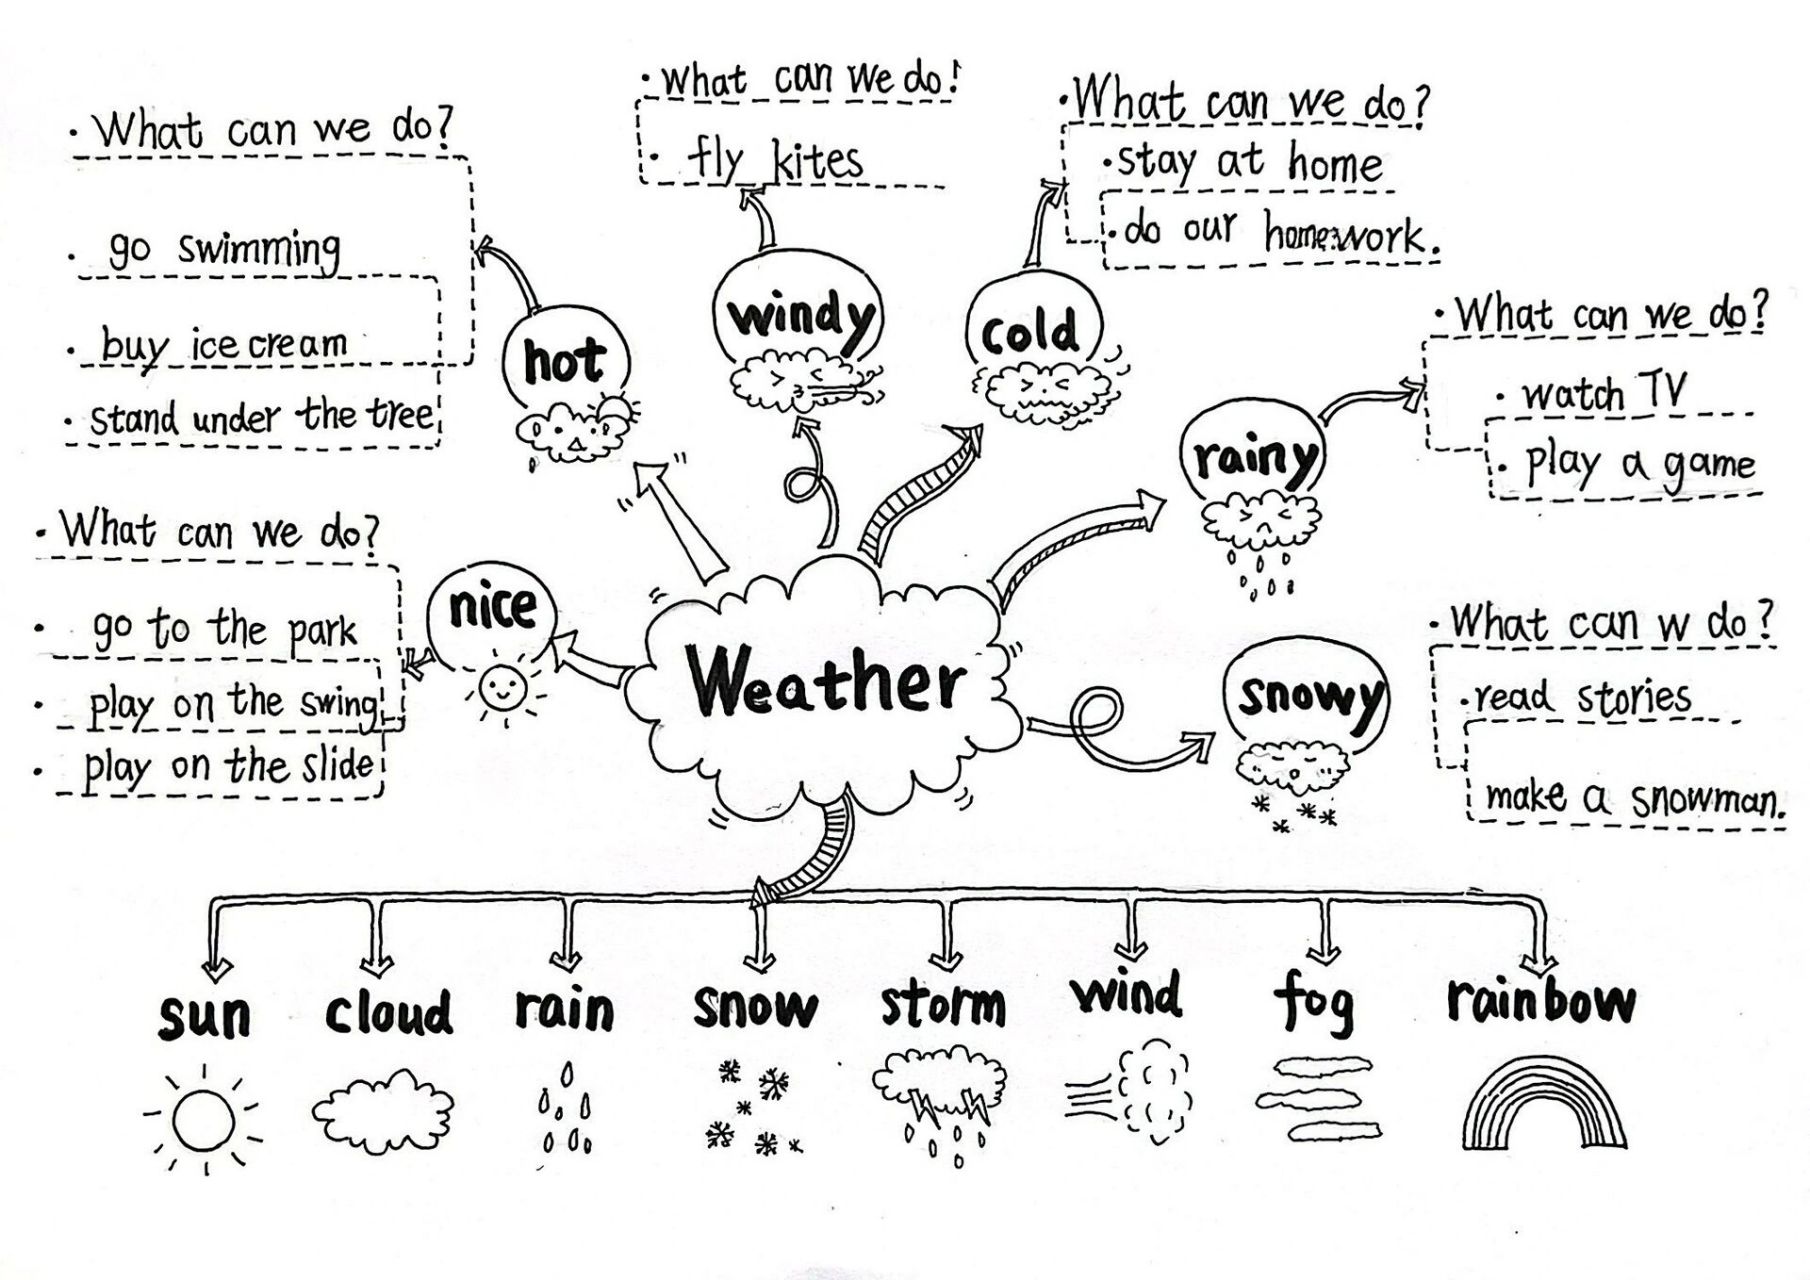 天气与气候的思维导图图片